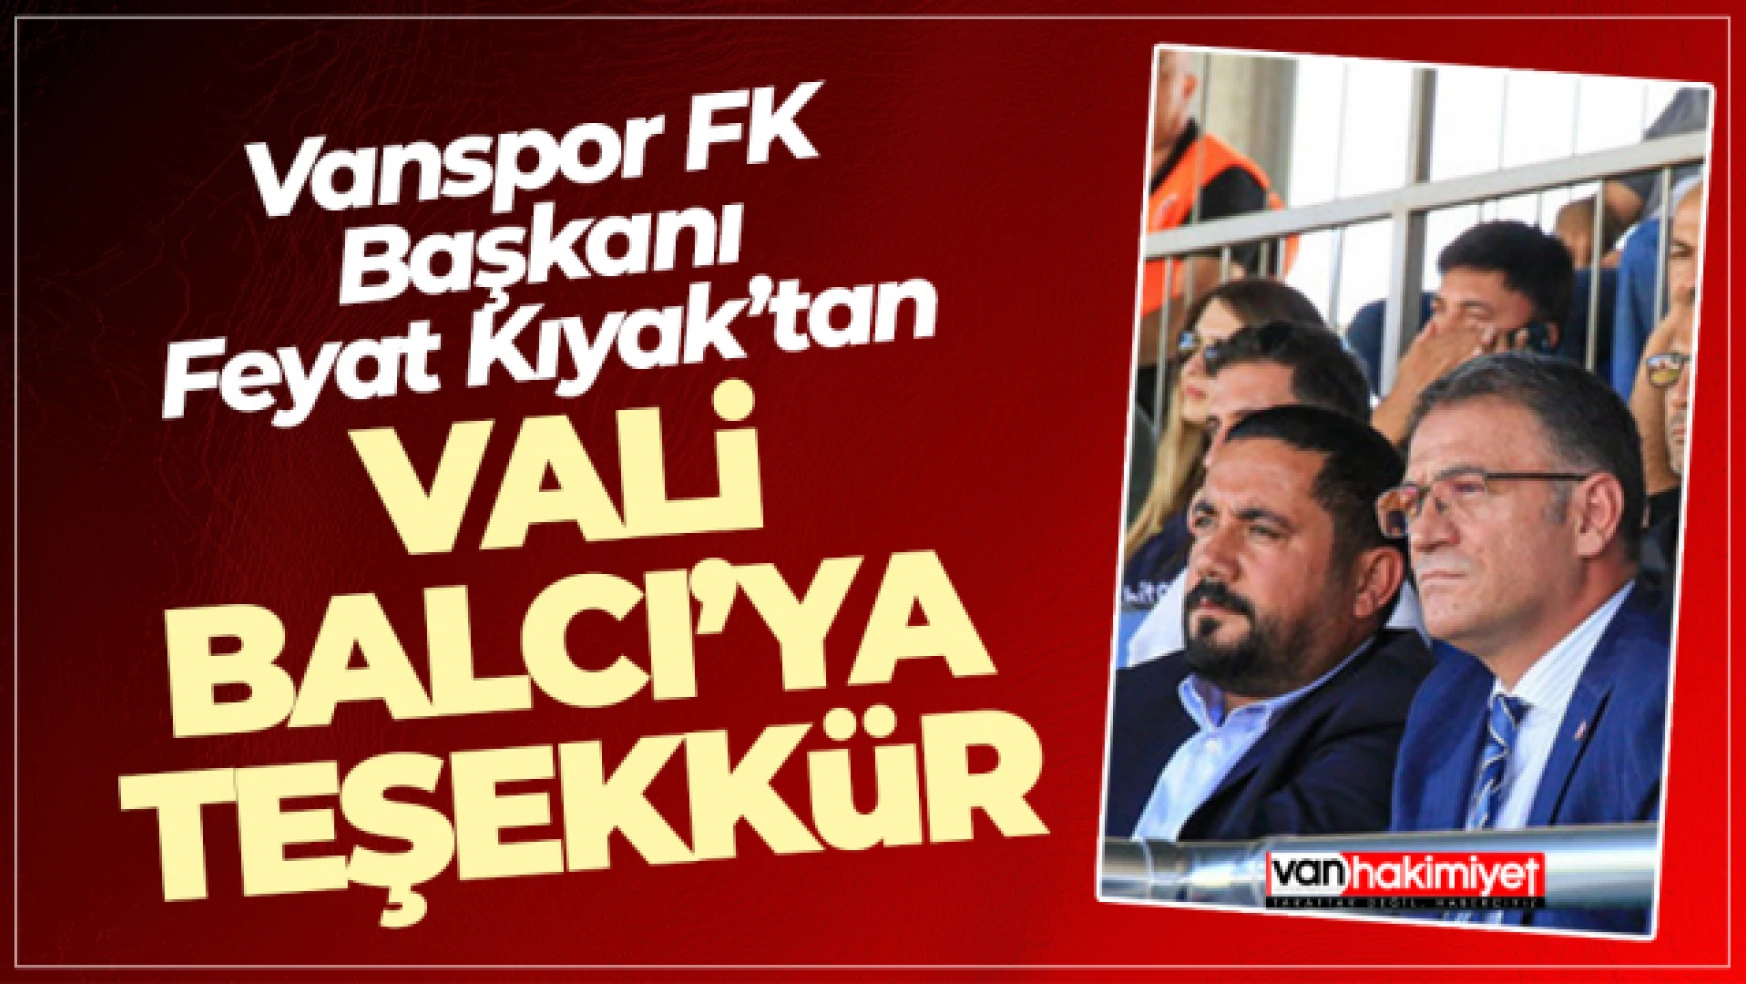 Vanspor Başkanı Feyat Kıyak'tan Vali Balcı'ya teşekkür